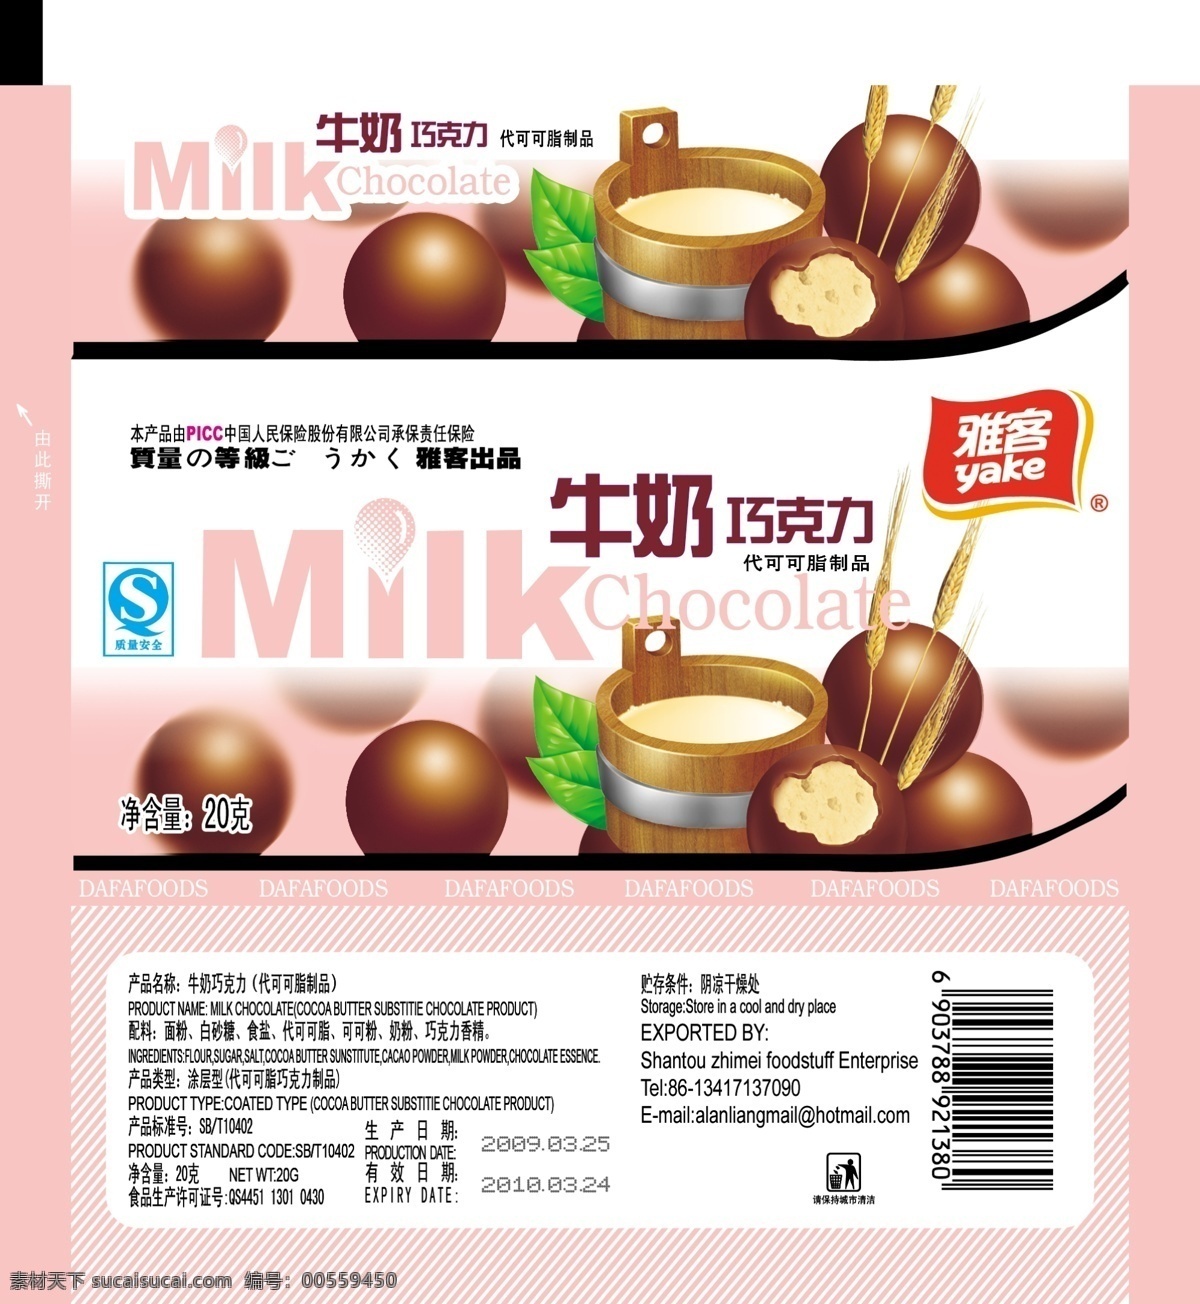 巧克力 麦丽素 雅客巧克力 牛奶 牛奶巧克力 糖果 包装设计